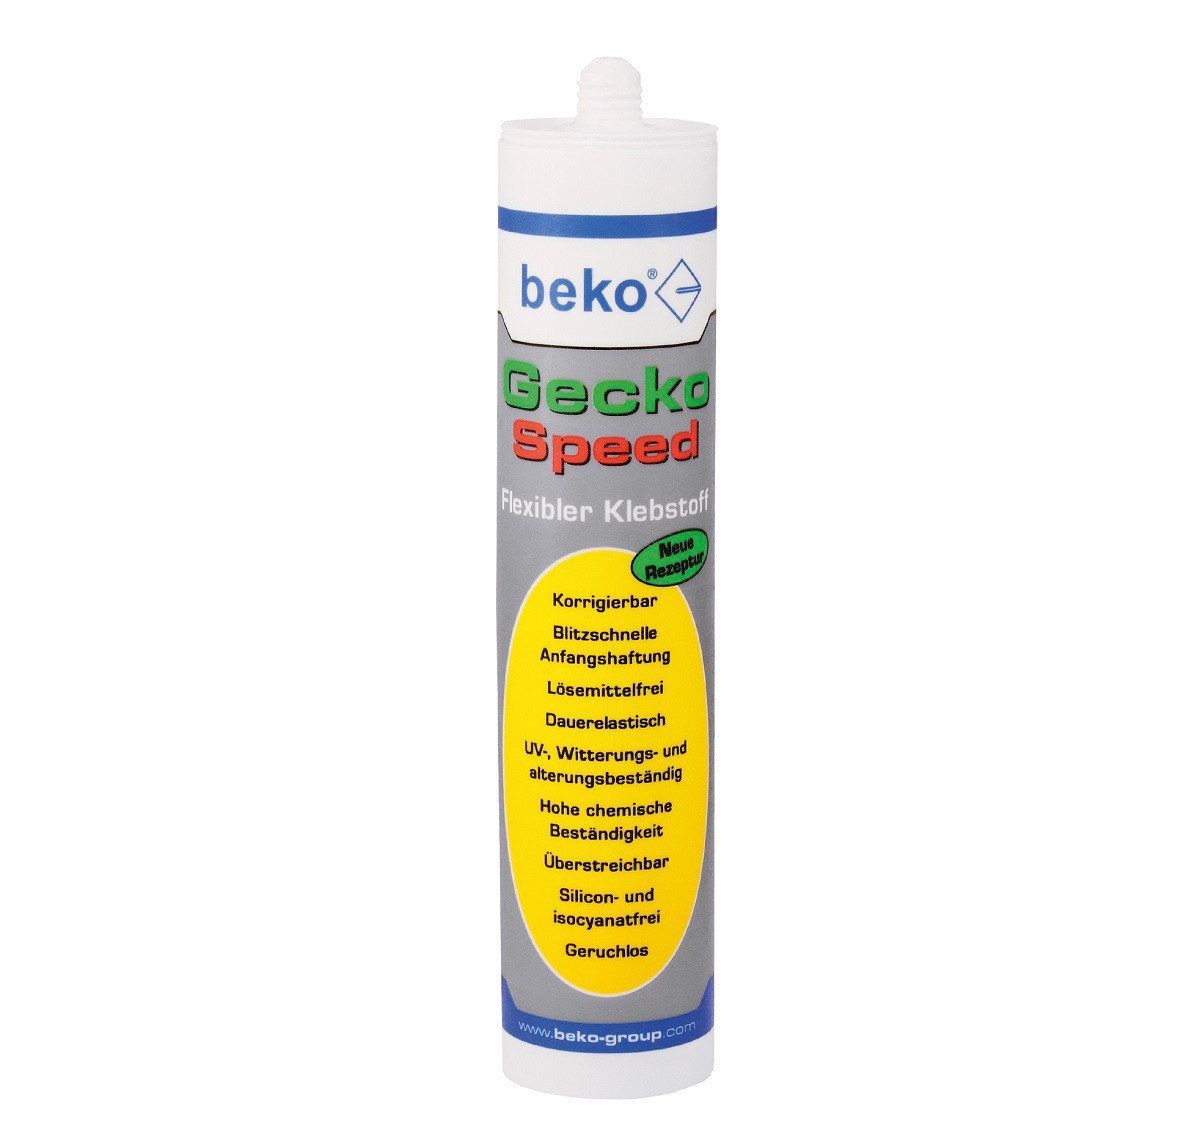 BEKO Dichtstoff BEKO Gecko Speed Weiß Flexilbler Klebstoff 290ml von BEKO